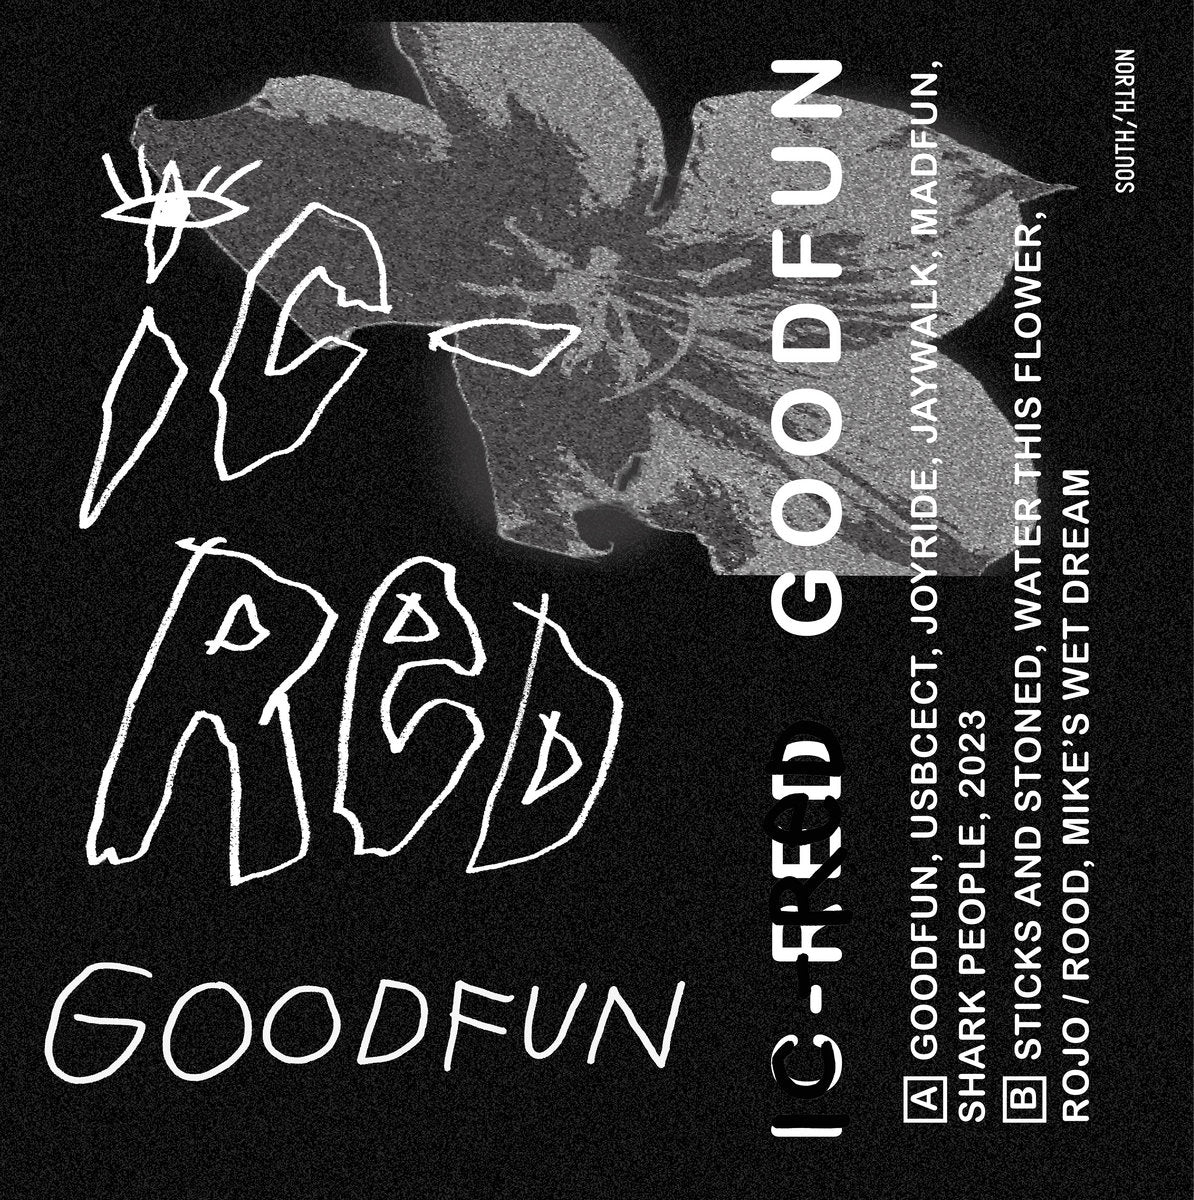 IC-RED - Goodfun